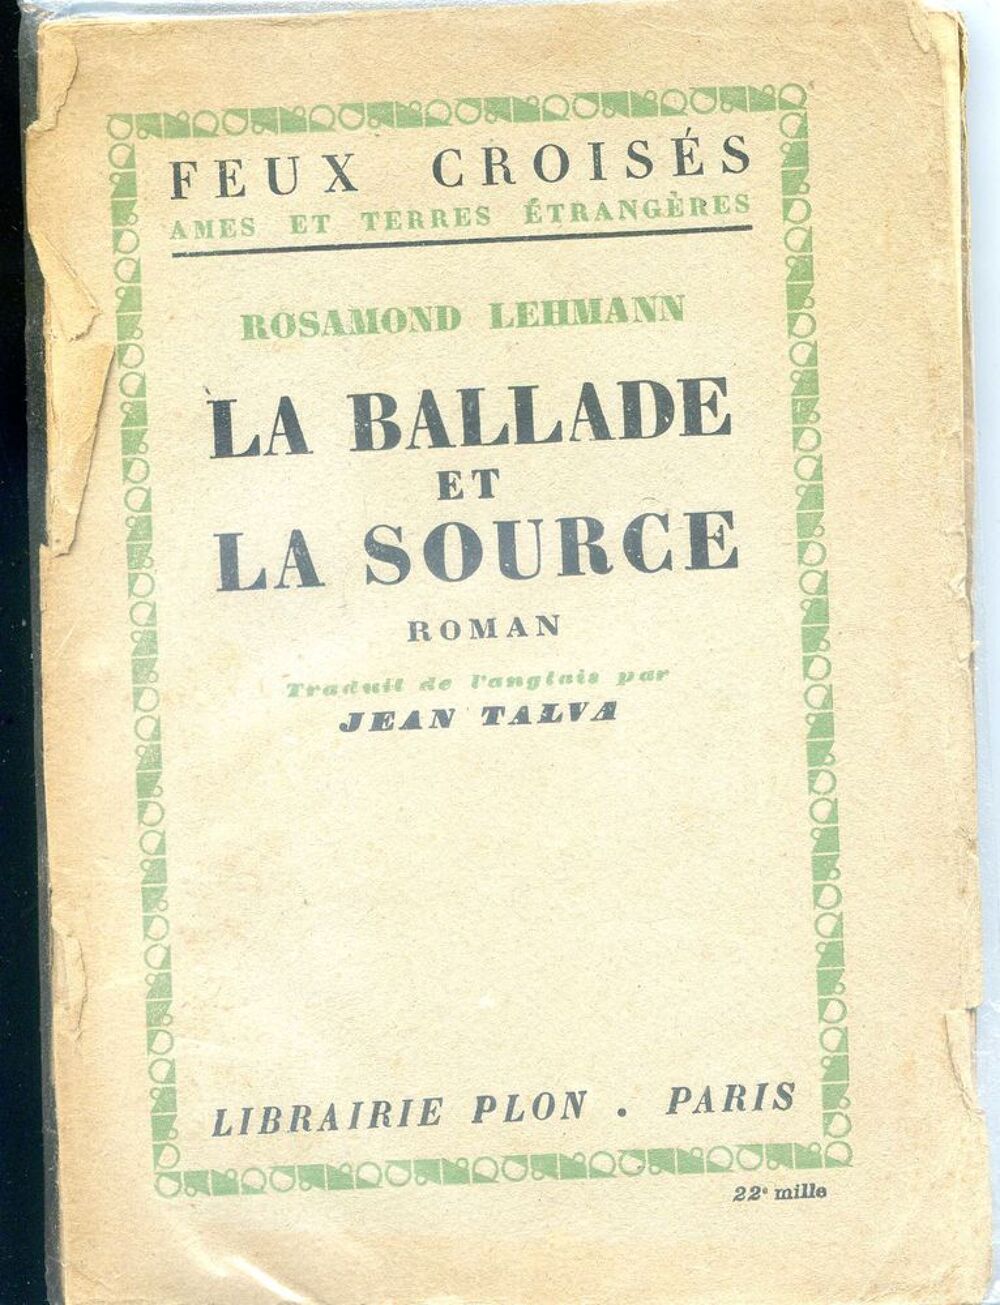 La ballade et la source - Rosamond Lehmann, Livres et BD